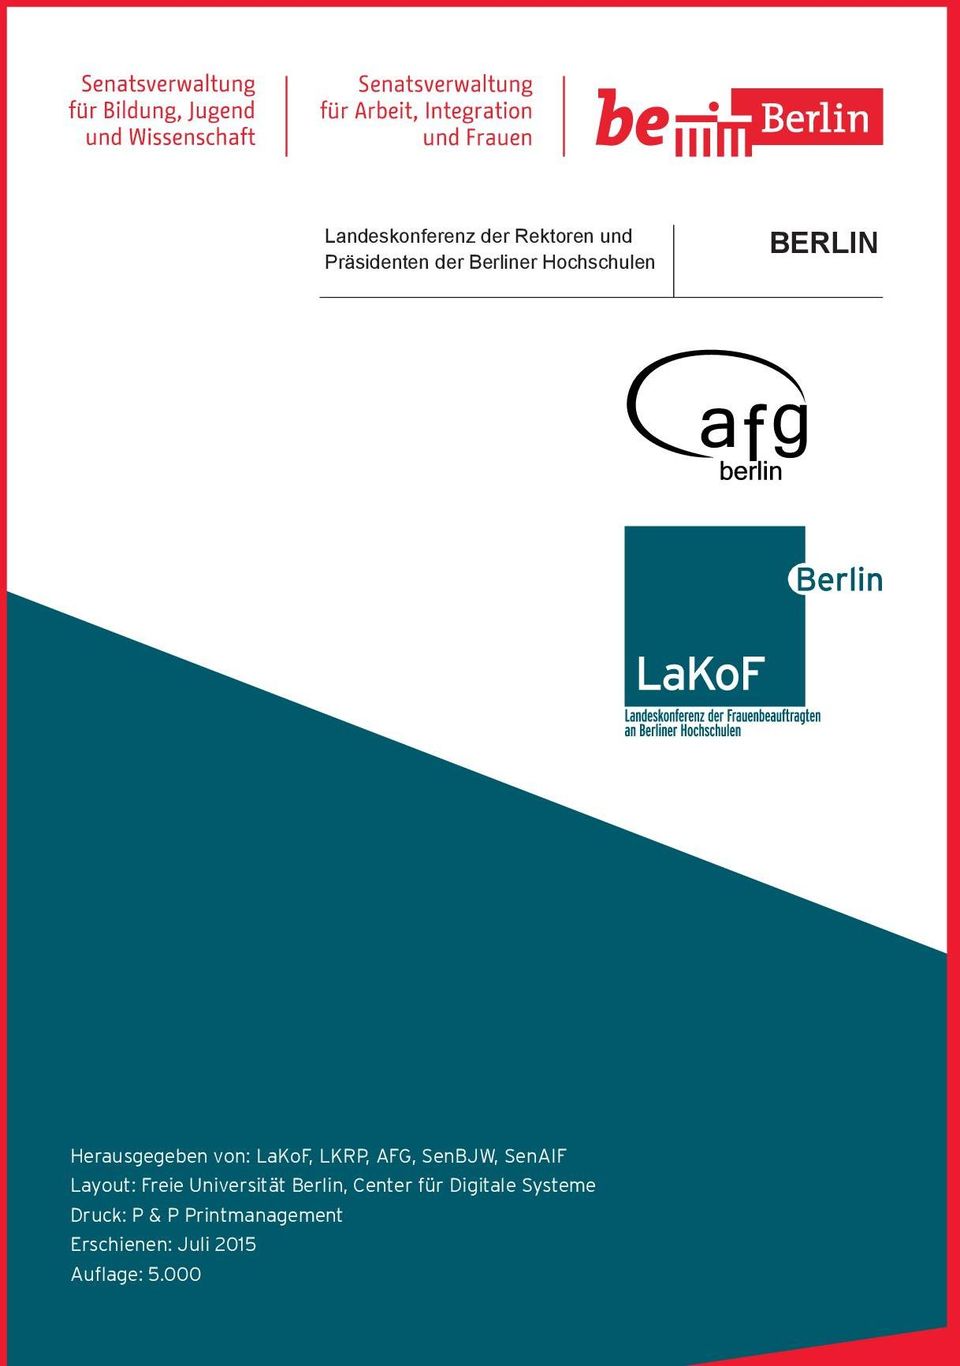 SenAIF Layout: Freie Universität Berlin, Center für Digitale